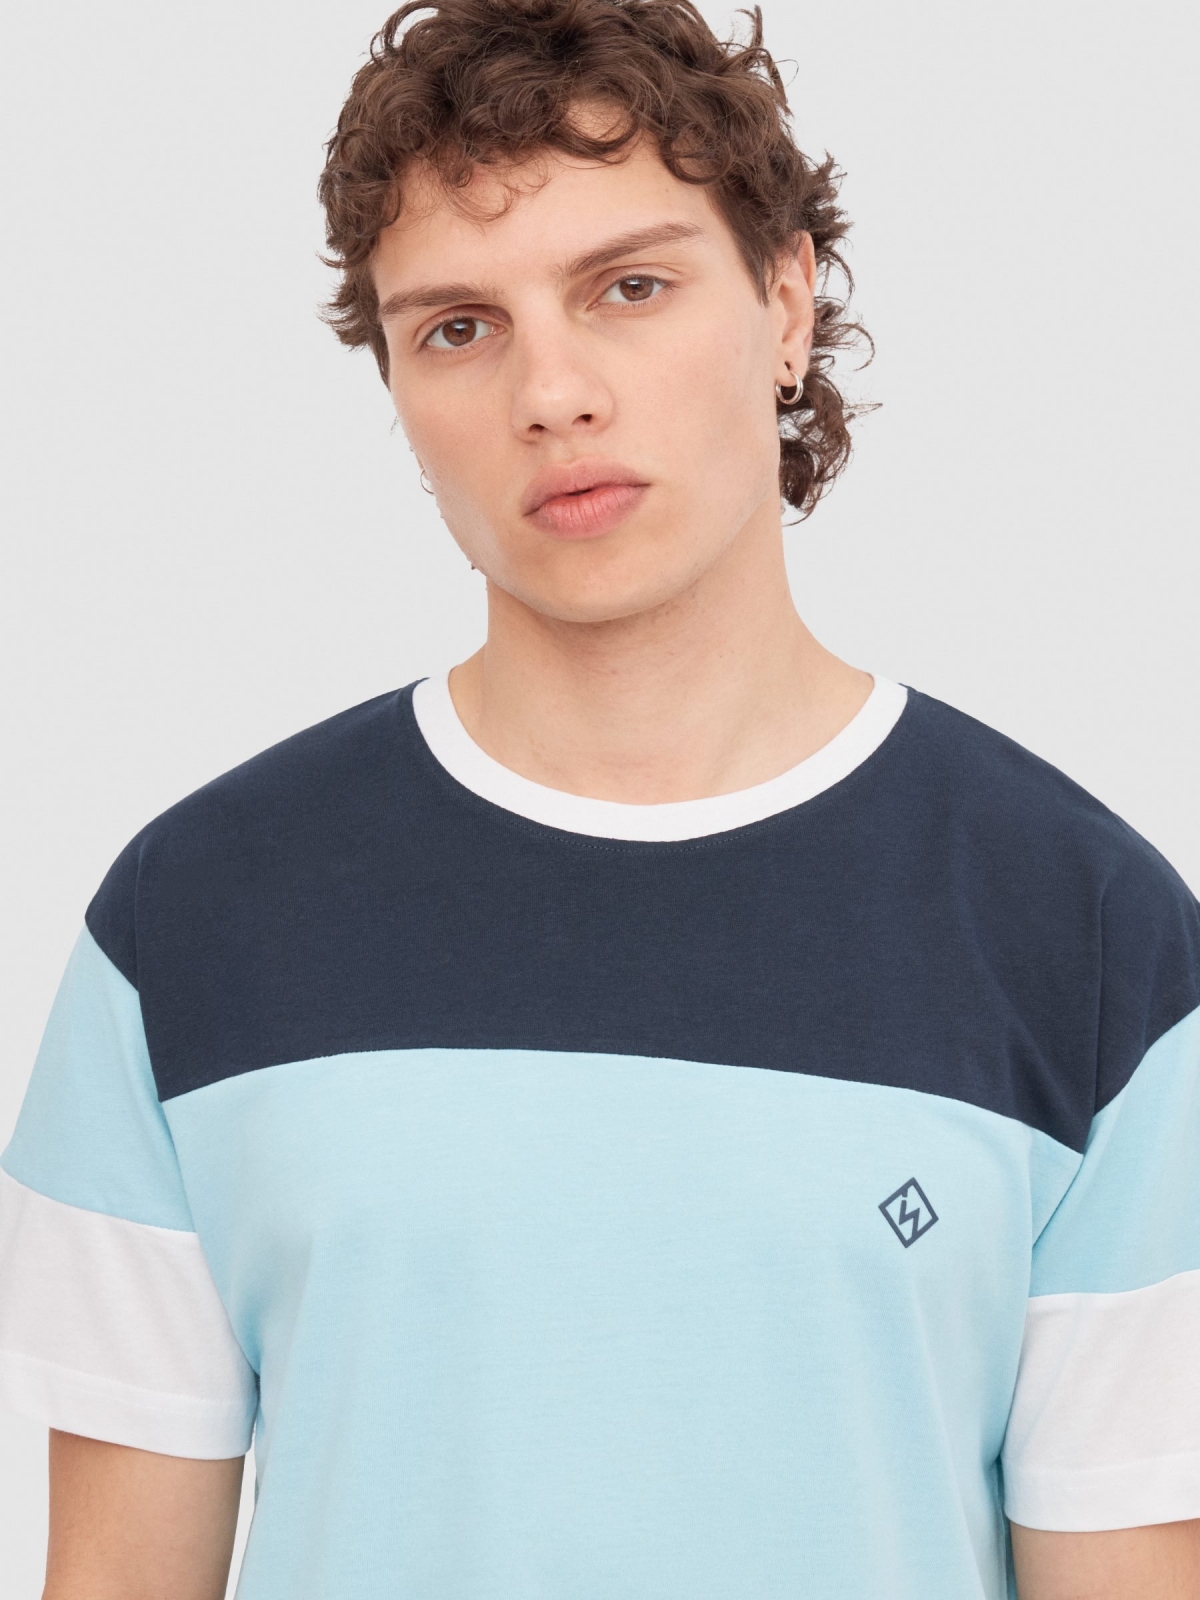 T-shirt desportiva com textura azul claro vista detalhe